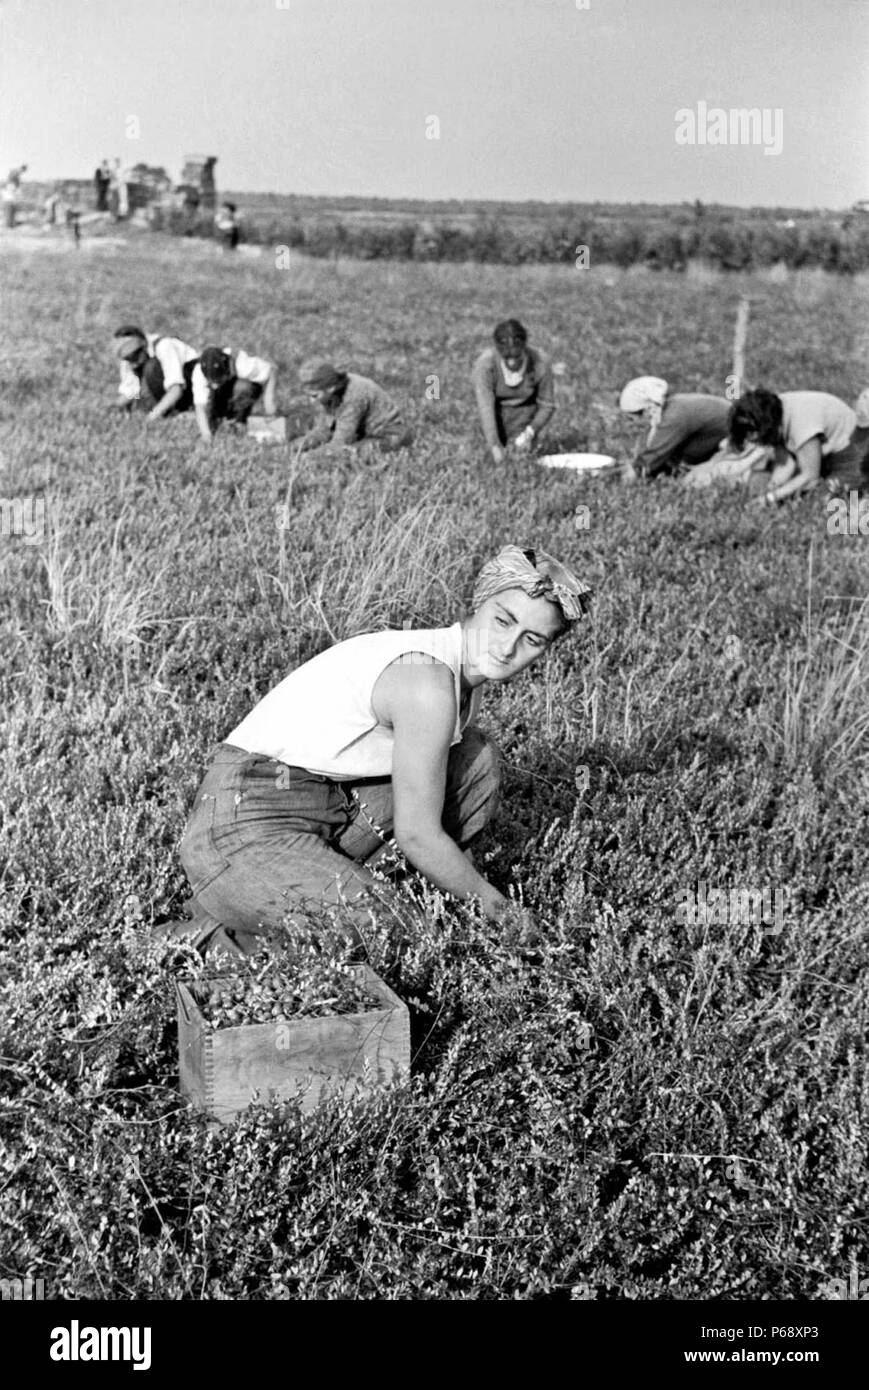 Arthur Rothstein (1915-1985), US-amerikanischer Fotograf.; "Frau Kommissionierung Cranberries'; Burlington County, New Jersey, 1938 während der großen Depression Stockfoto